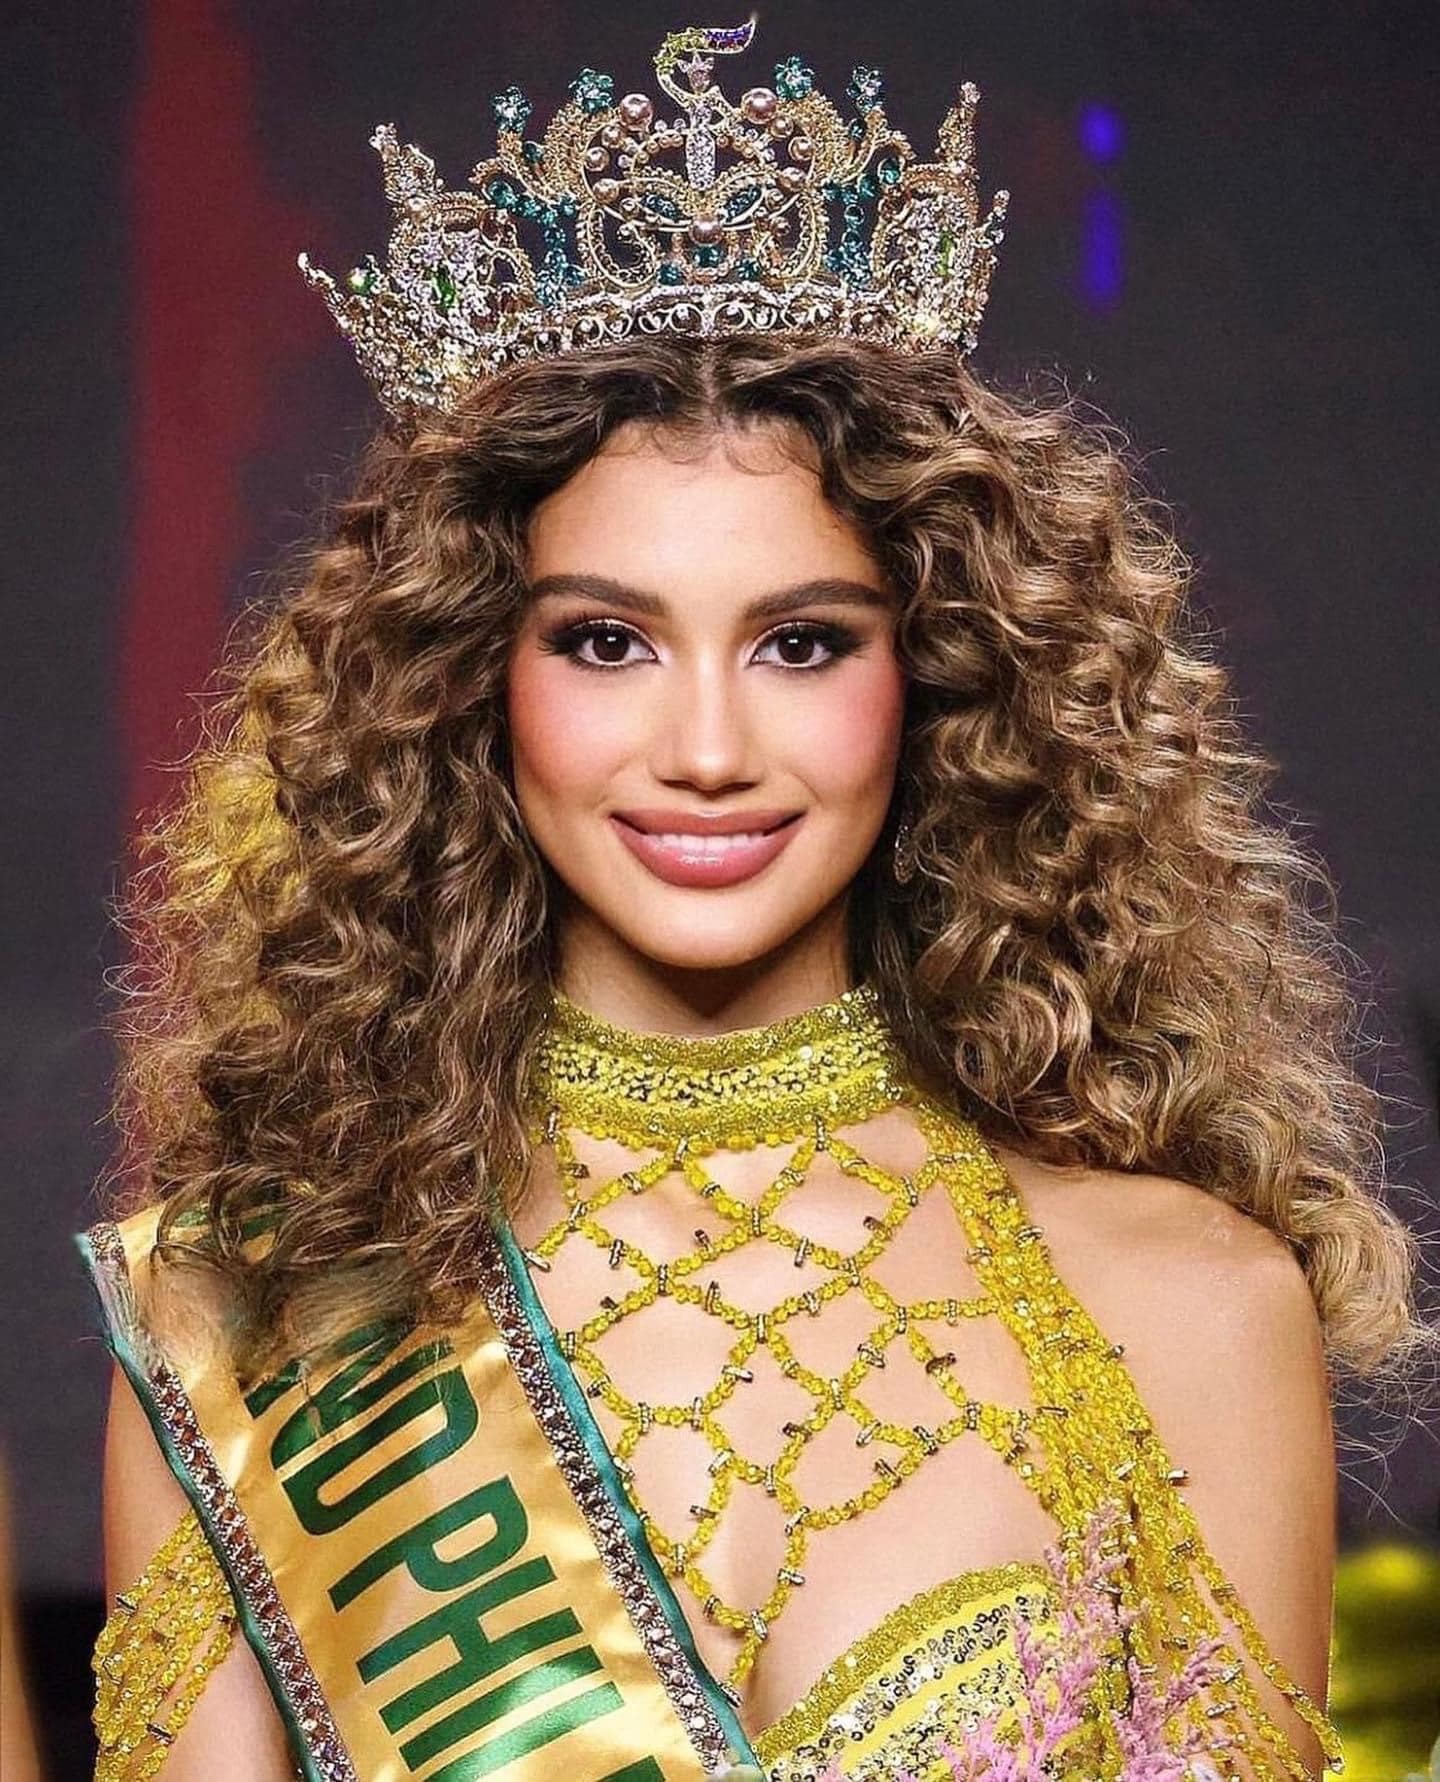 Nhan sắc người mẫu 19 tuổi đăng quang Hoa hậu Hòa bình Philippines - Ảnh 2.